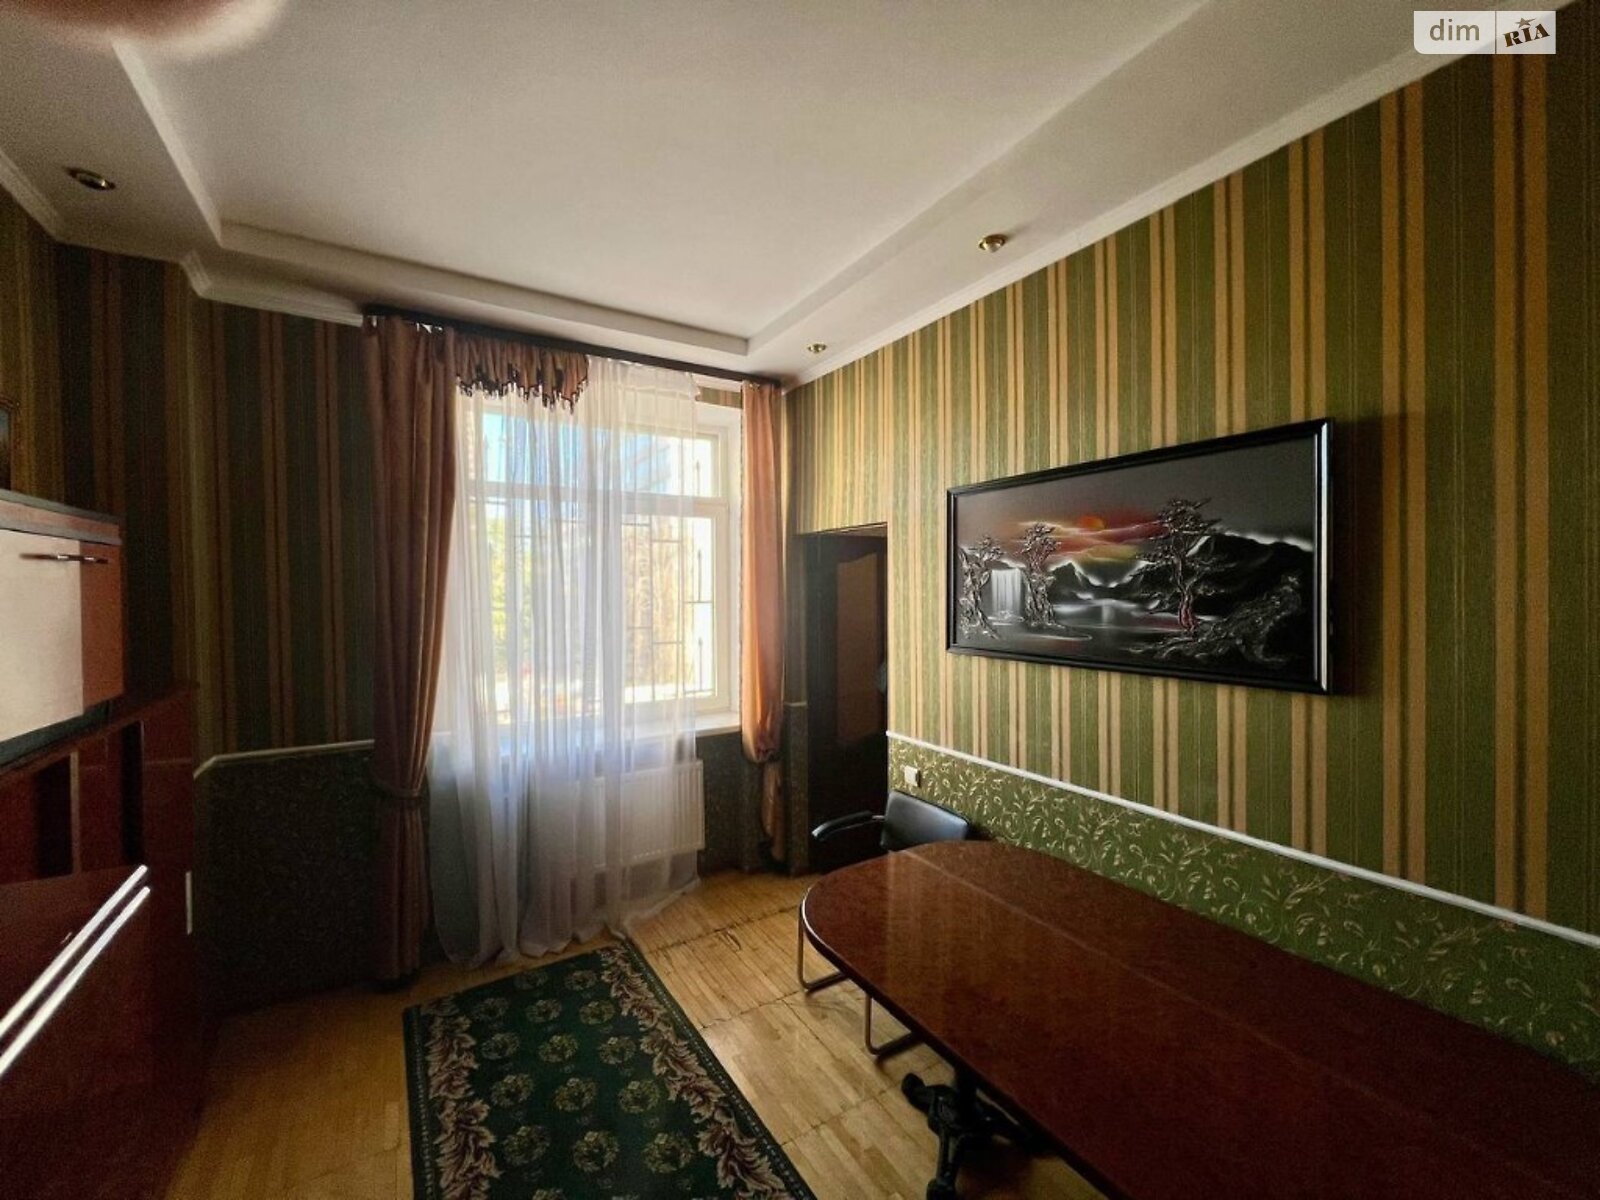 Аренда офисного помещения в Киеве, Западный переулок 3Ц, помещений - 9, этаж - 2 фото 1